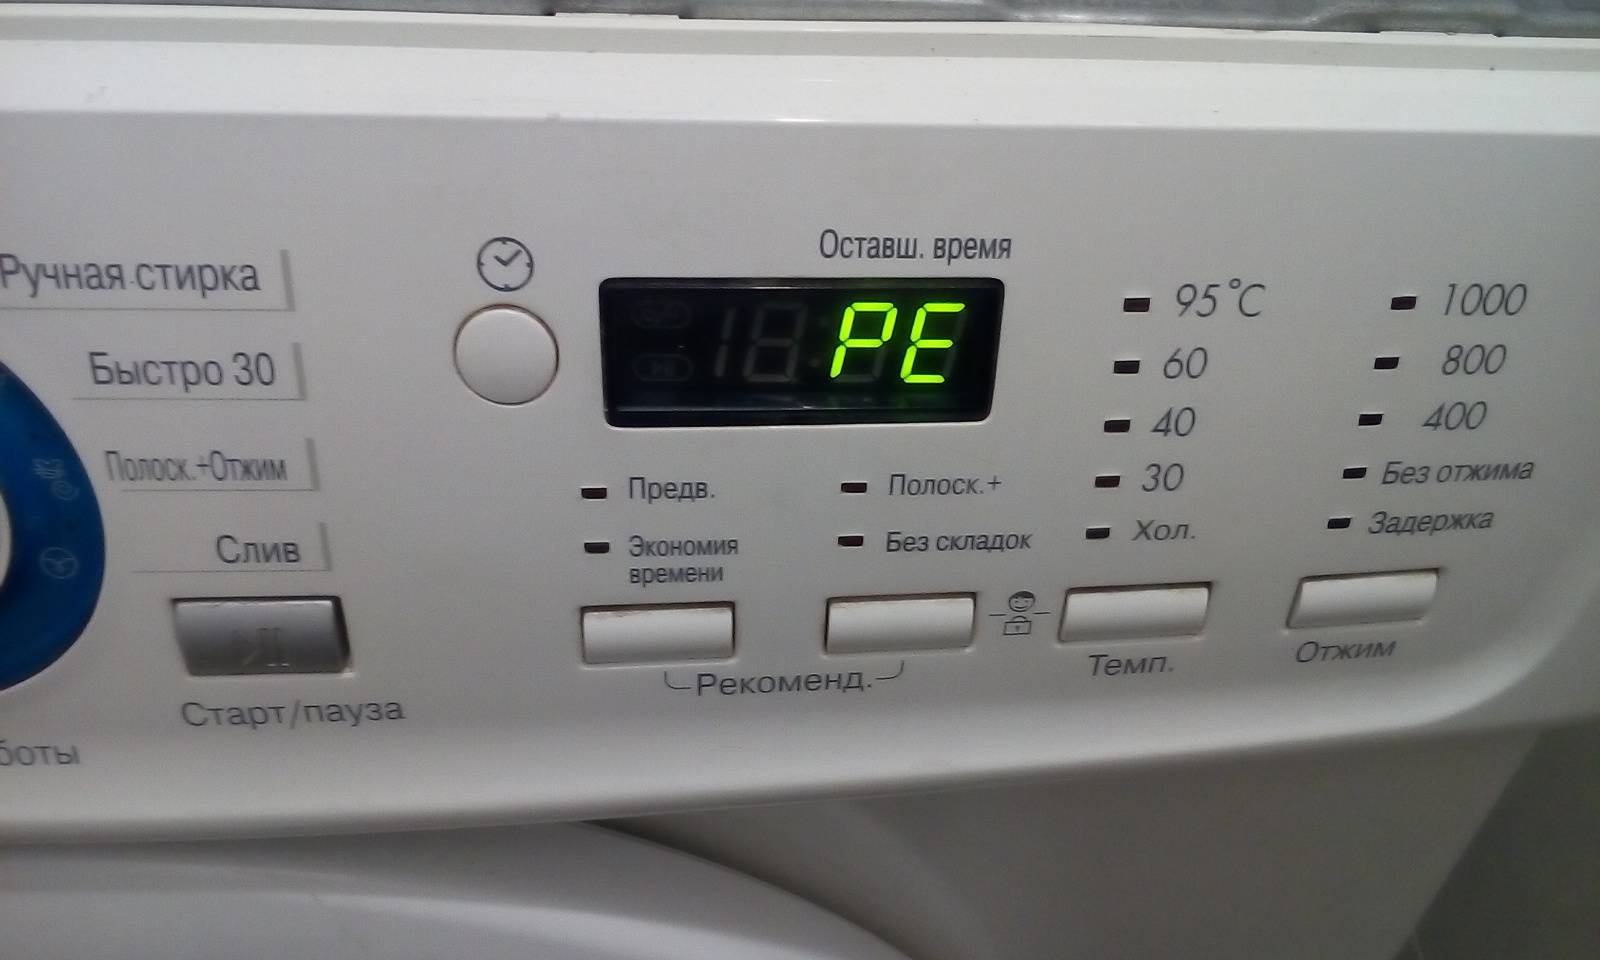 Что делать если возникает ошибка oe на стиральной машине элджи?